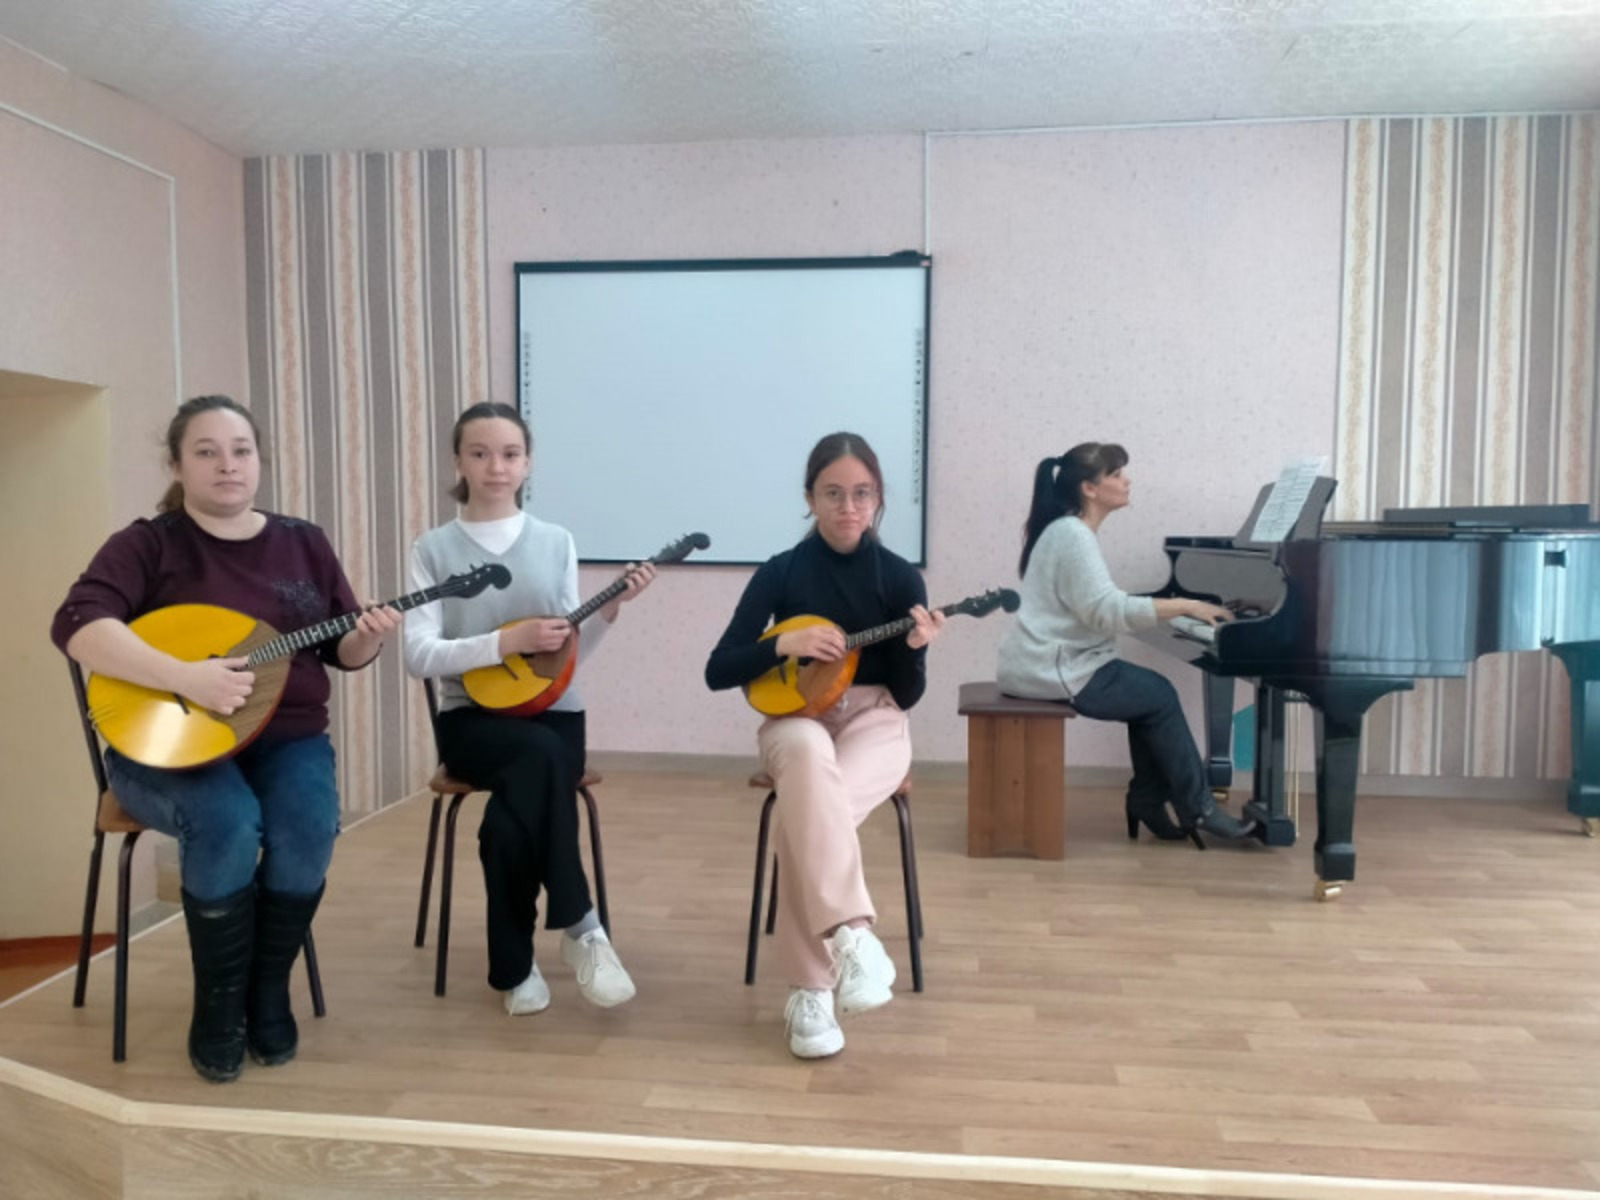 По проекту «Культурная среда» Башкирия получила 87 млн. рублей на музыкальные инструменты для школ